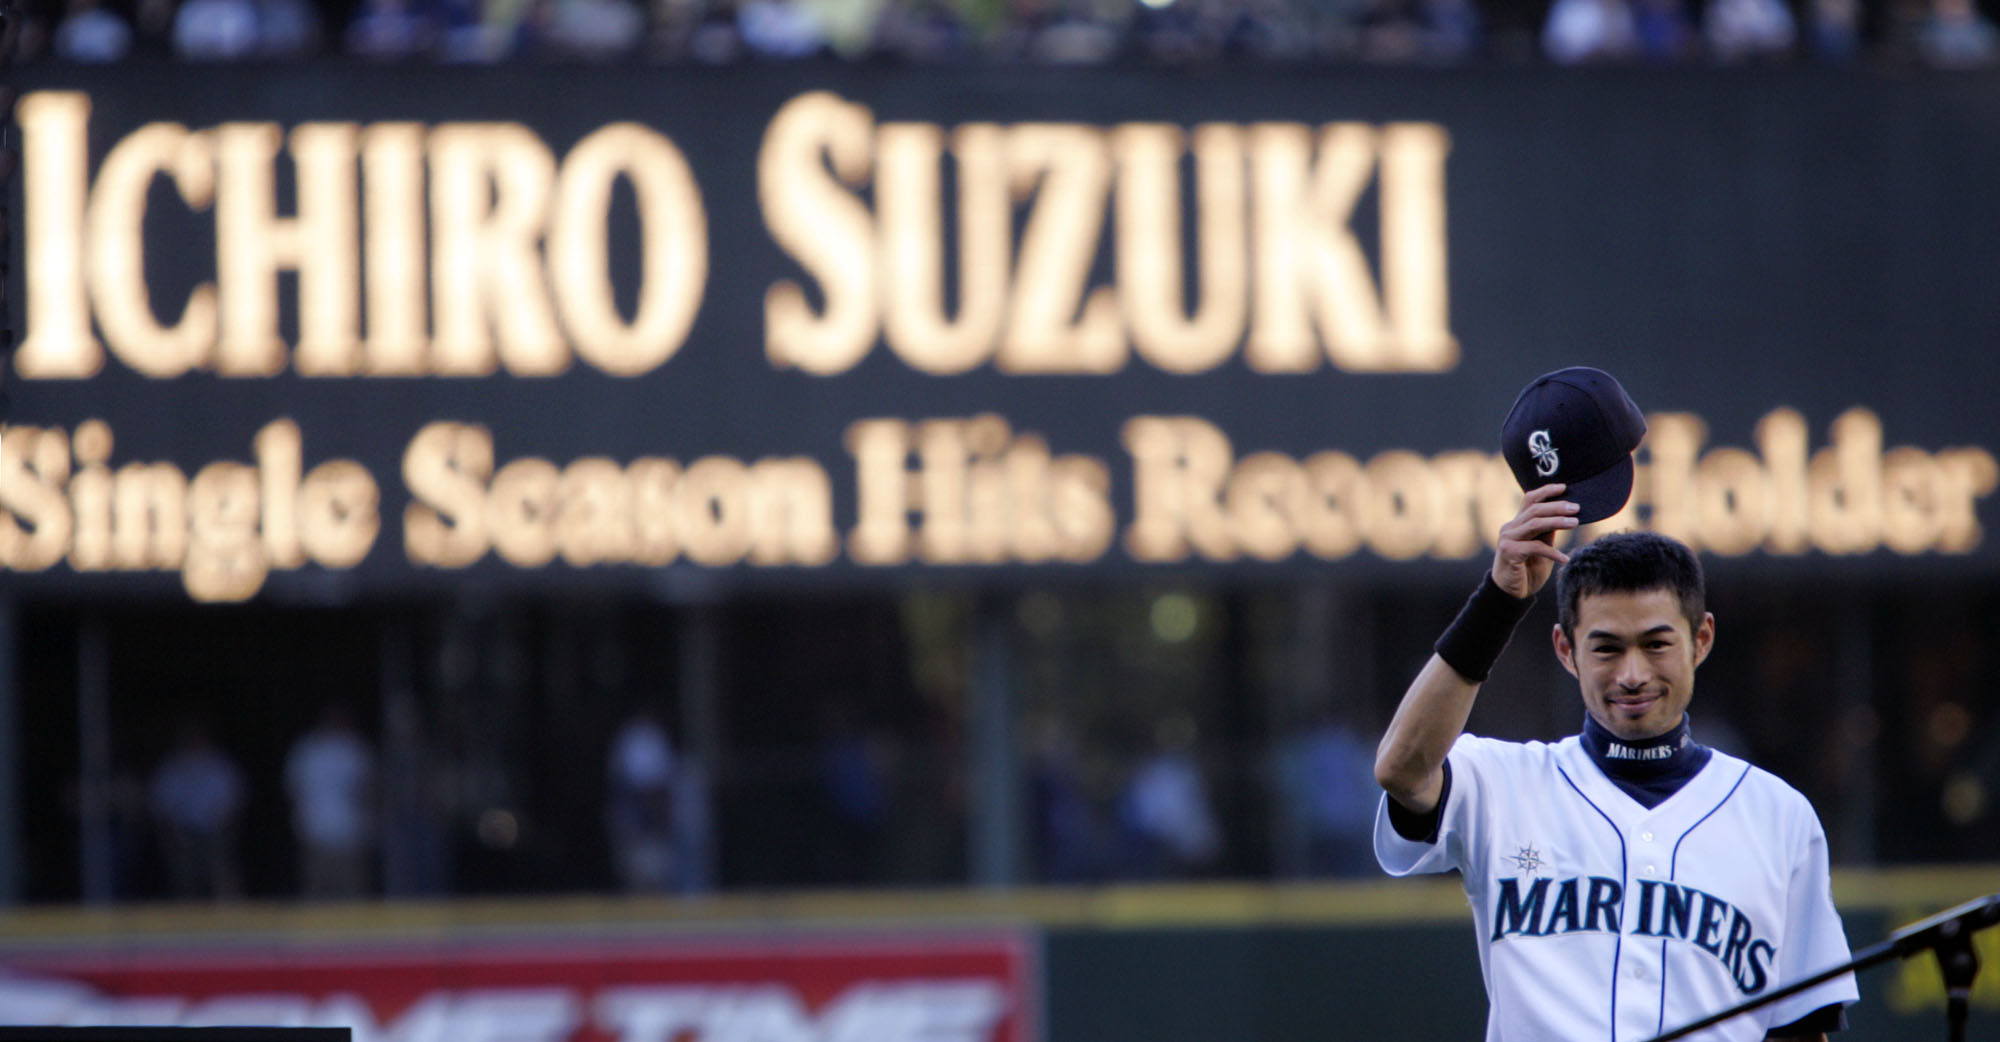 Mariners release Ichiro Suzuki, moving to front office